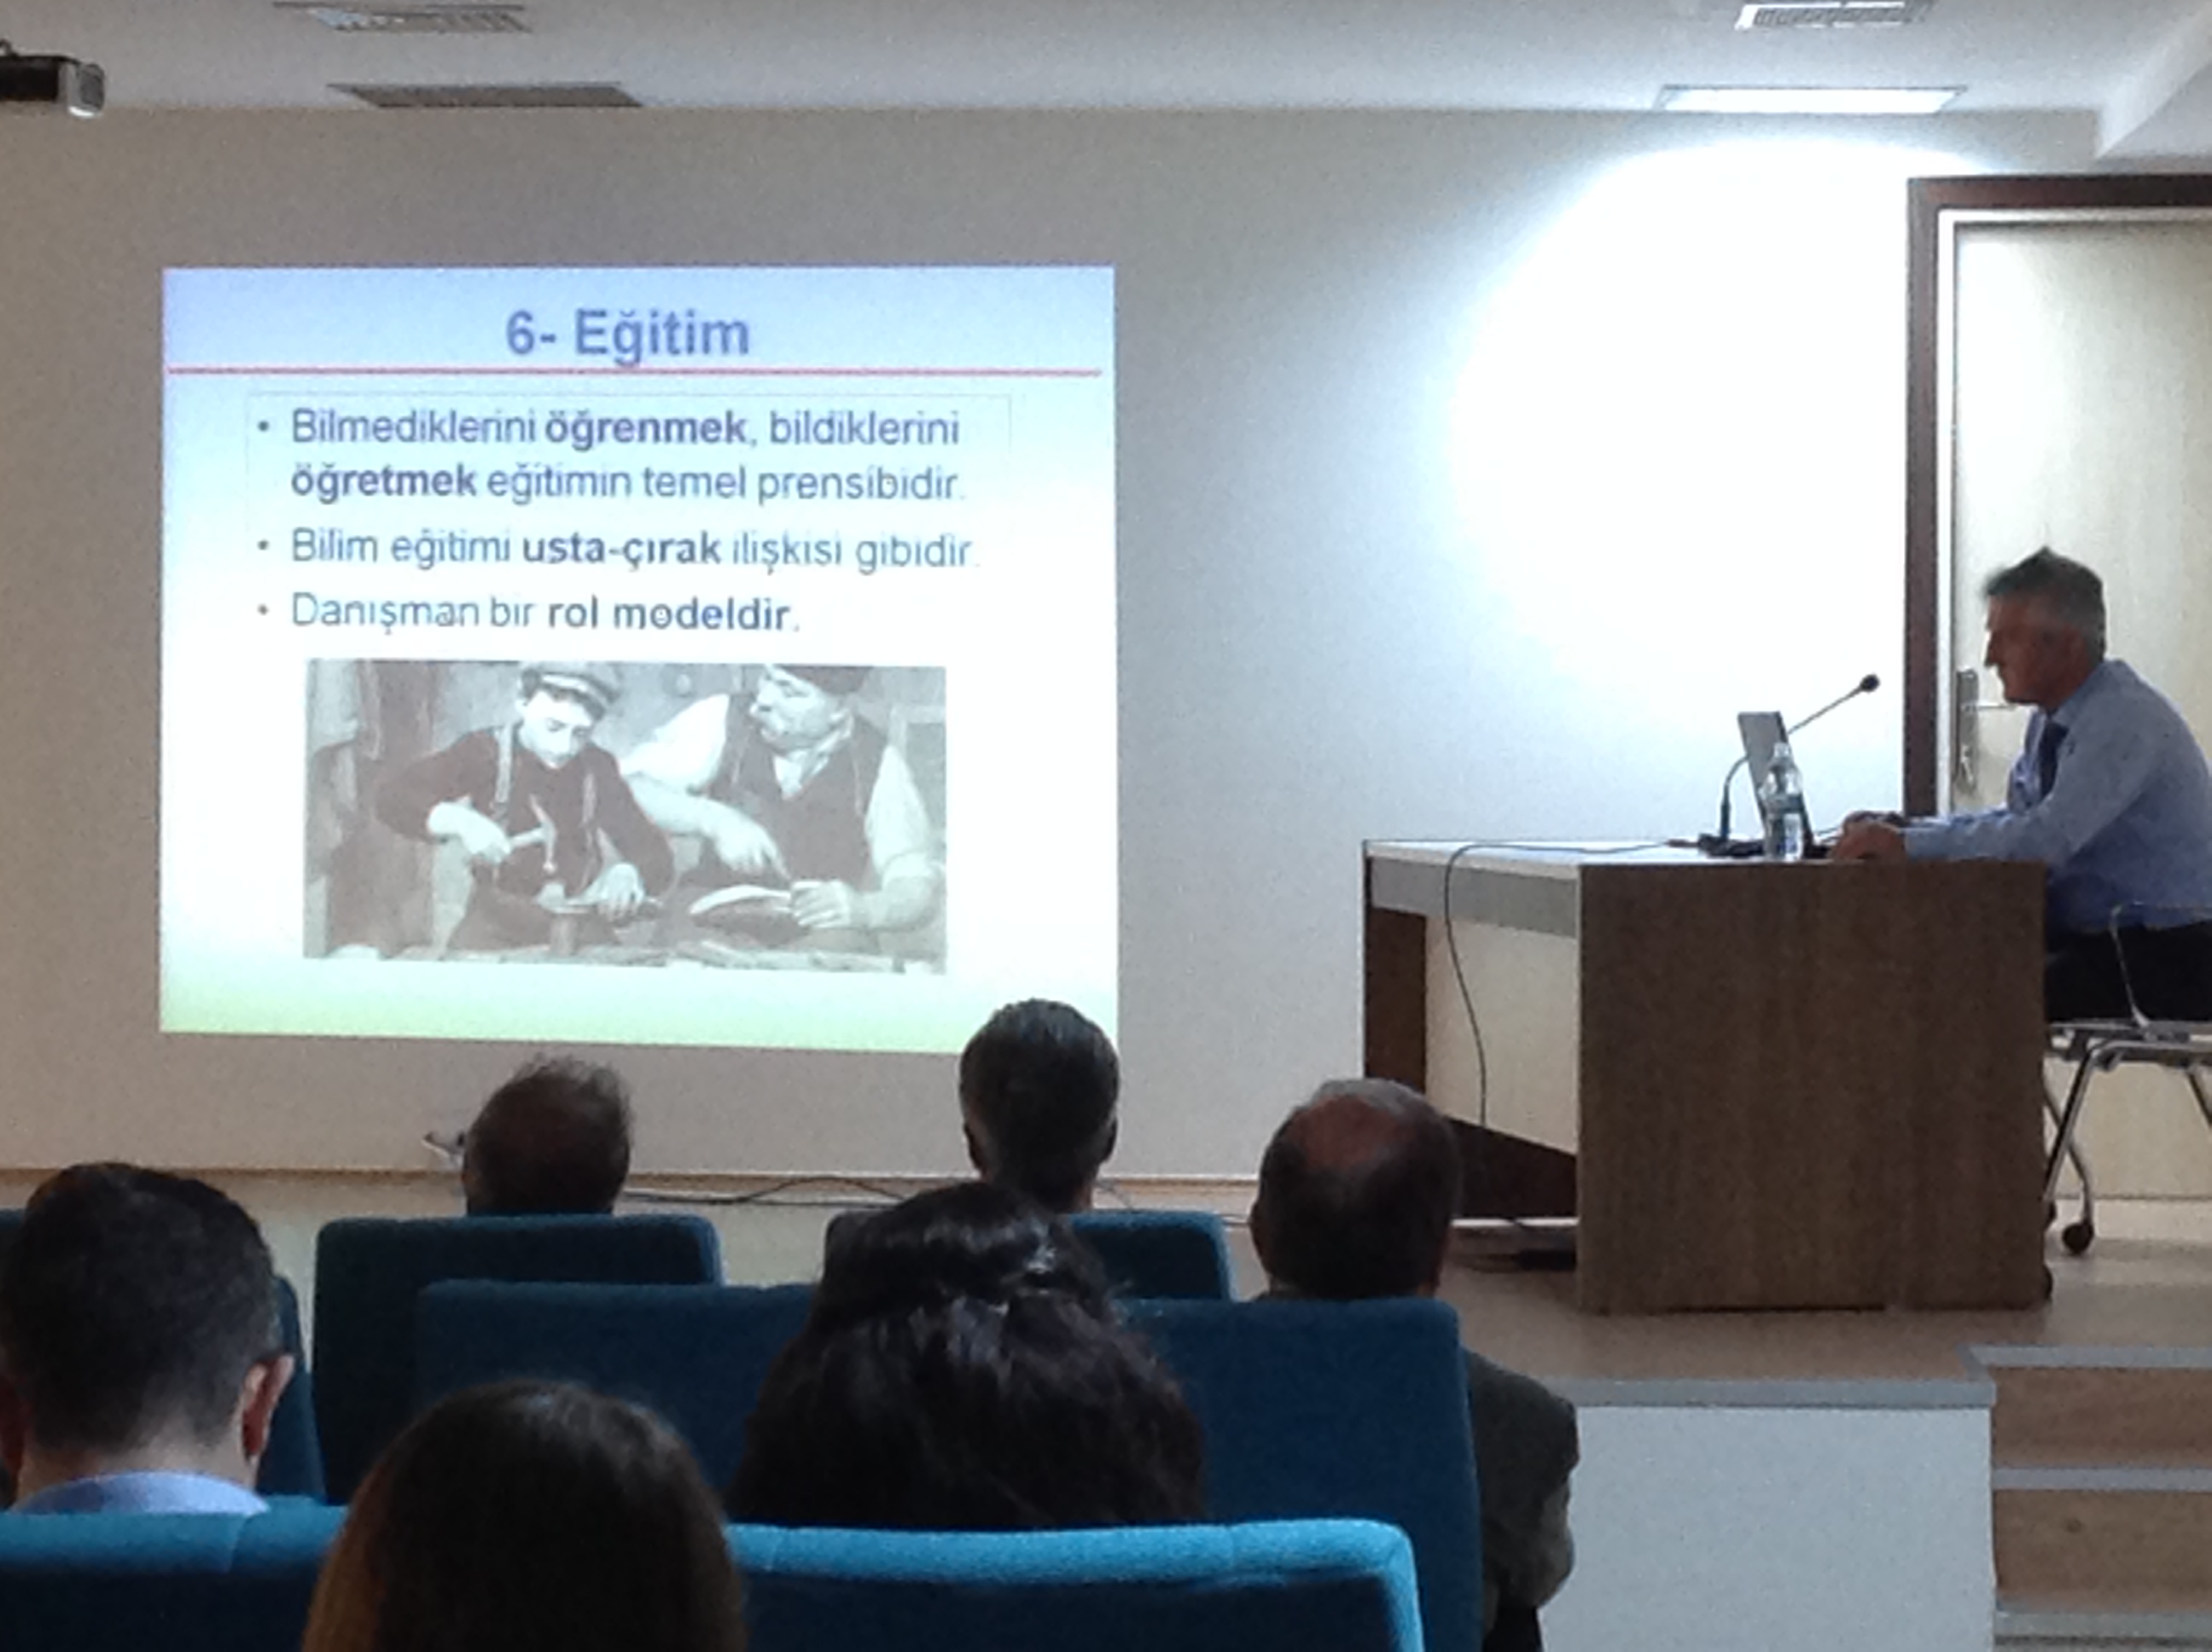  Prof. Dr. Kadri Arslan Bilimsel Araştırma ve Yayınlarda Etik İlkeleri üzerine konuştu 